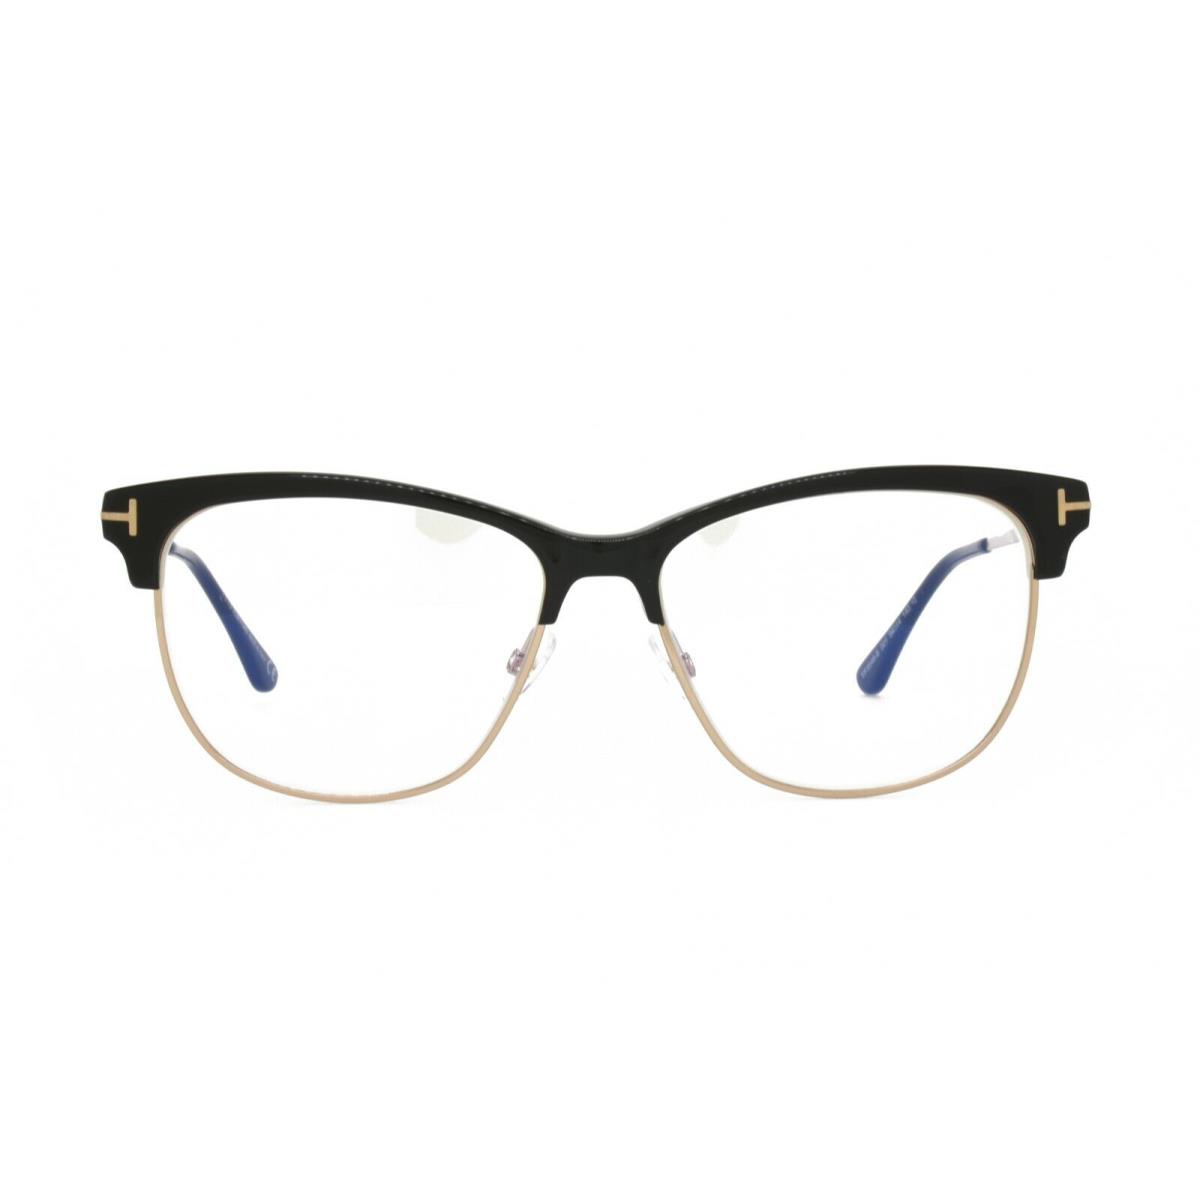 Tom Ford 5546 001 Eyeglasses with Blue Light Blocking Lenses 54-14-140